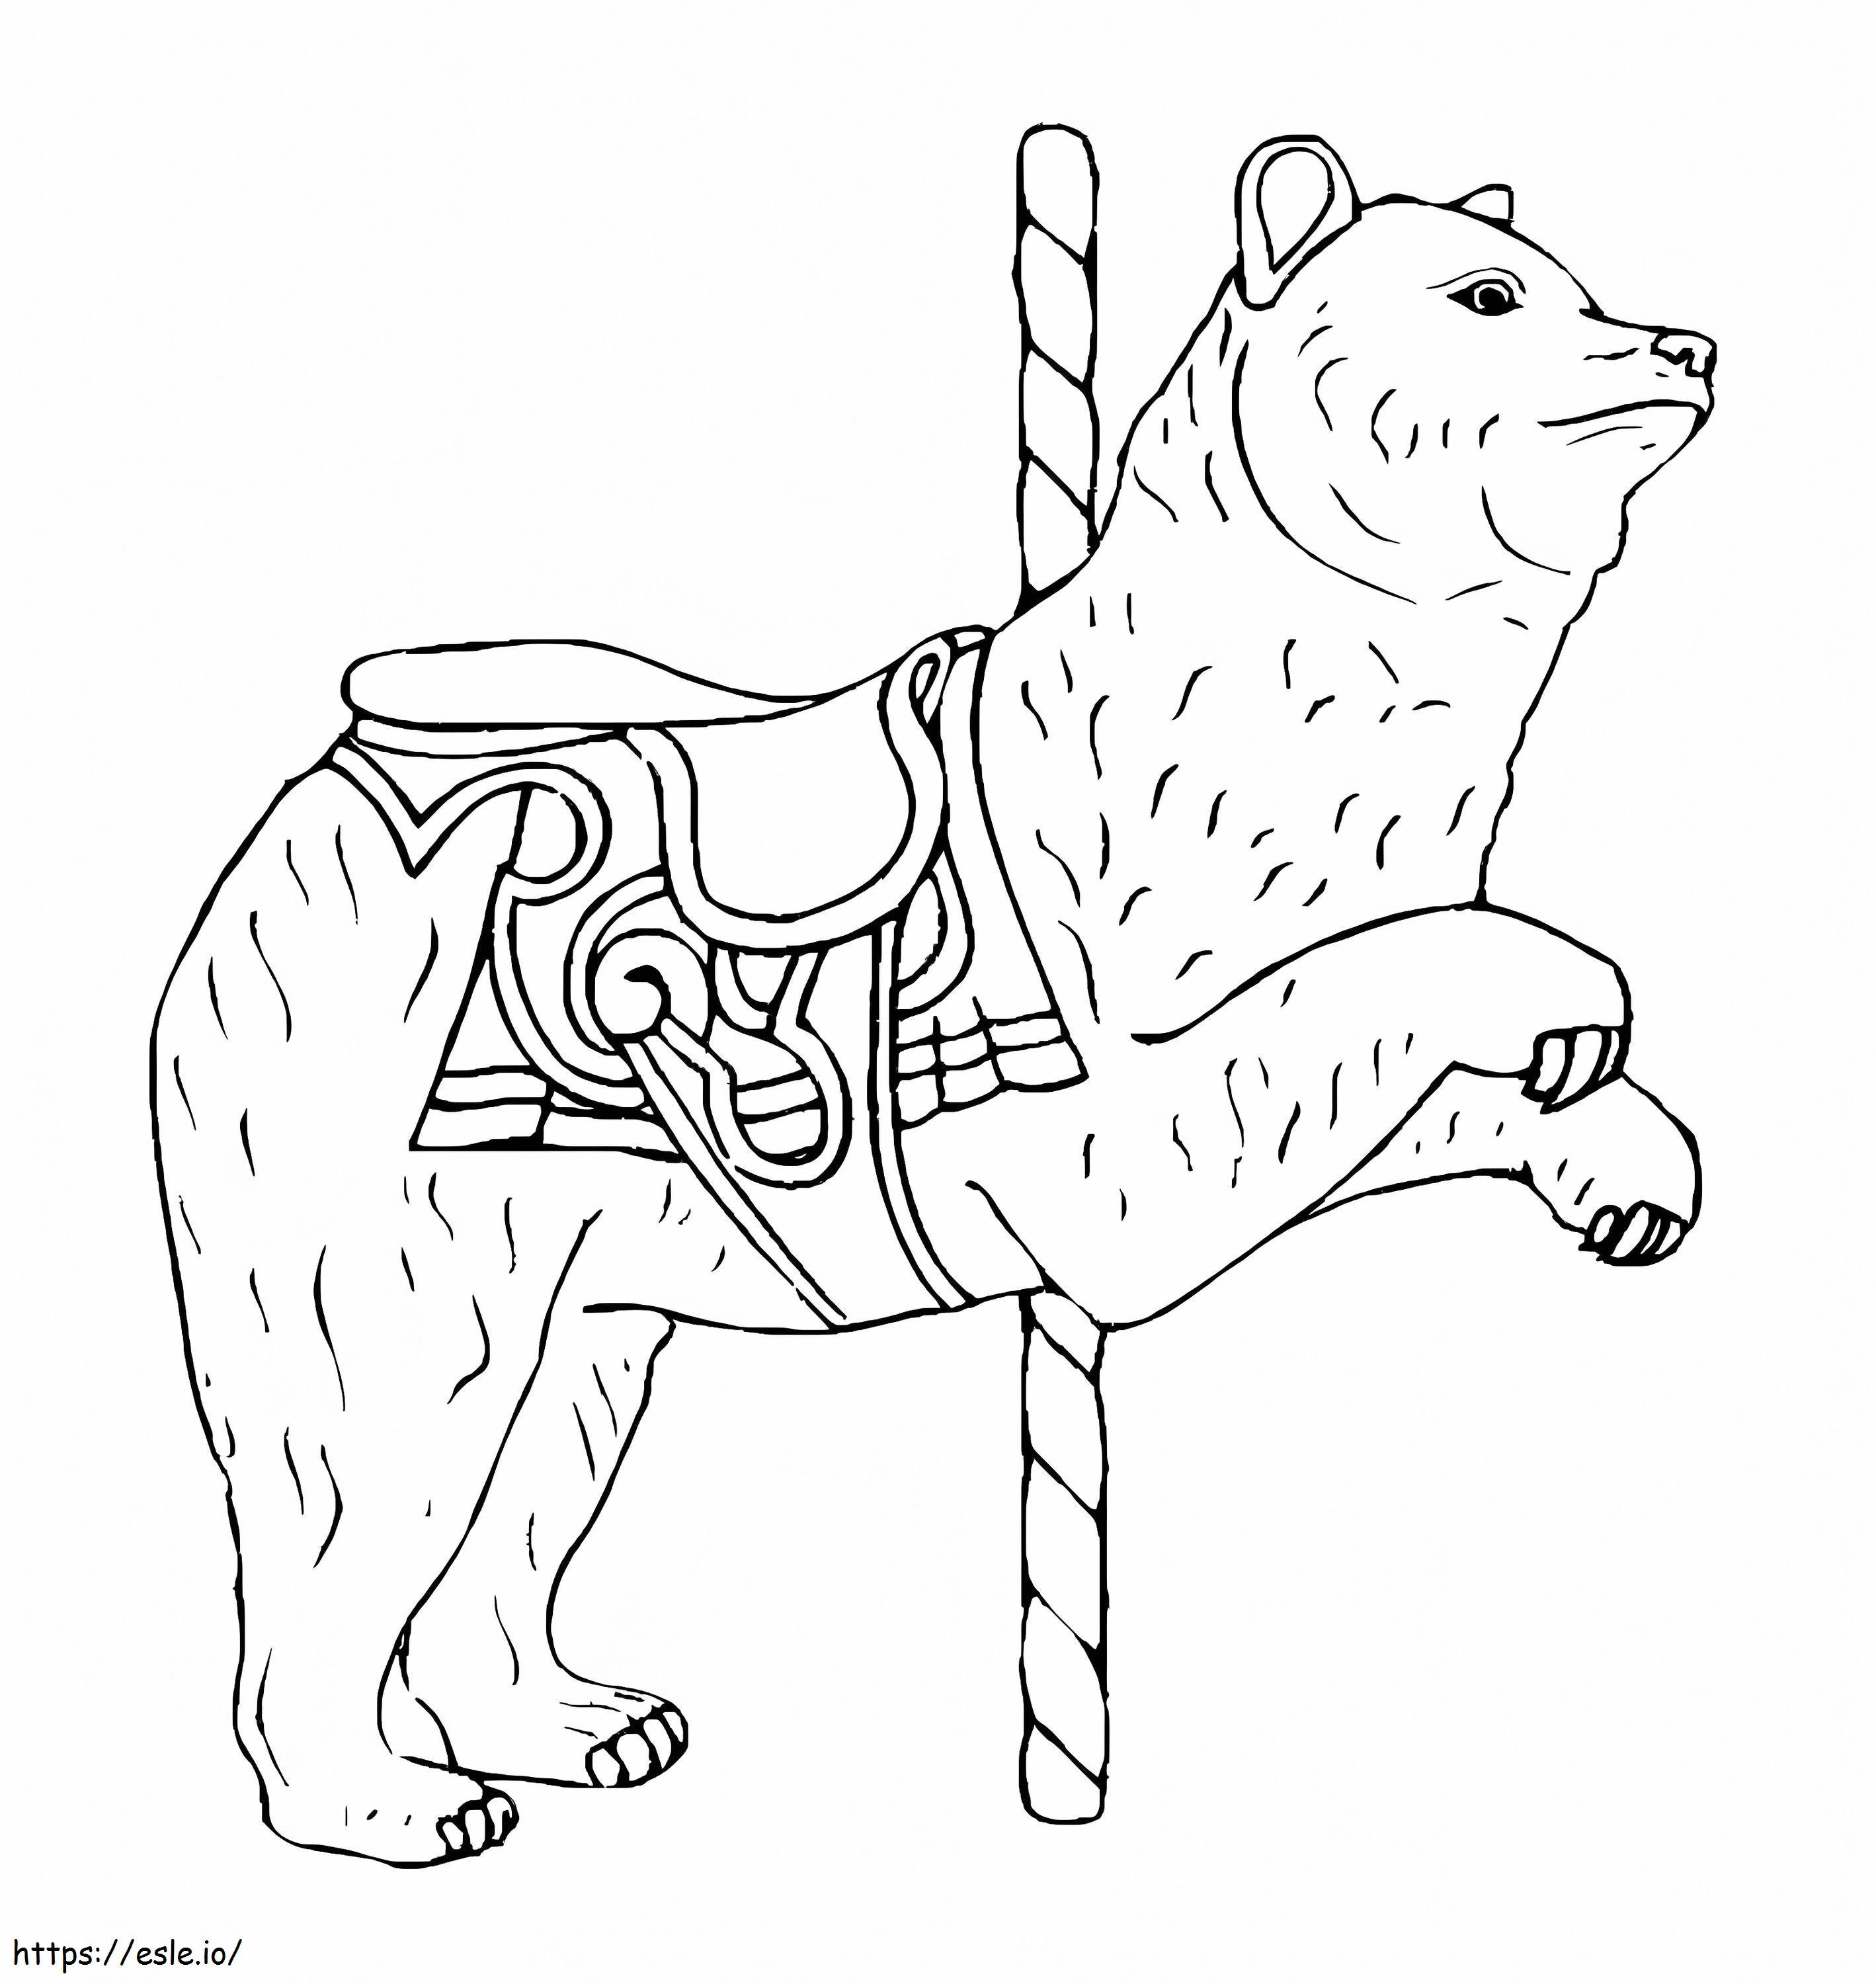 Ursul Carusel de colorat